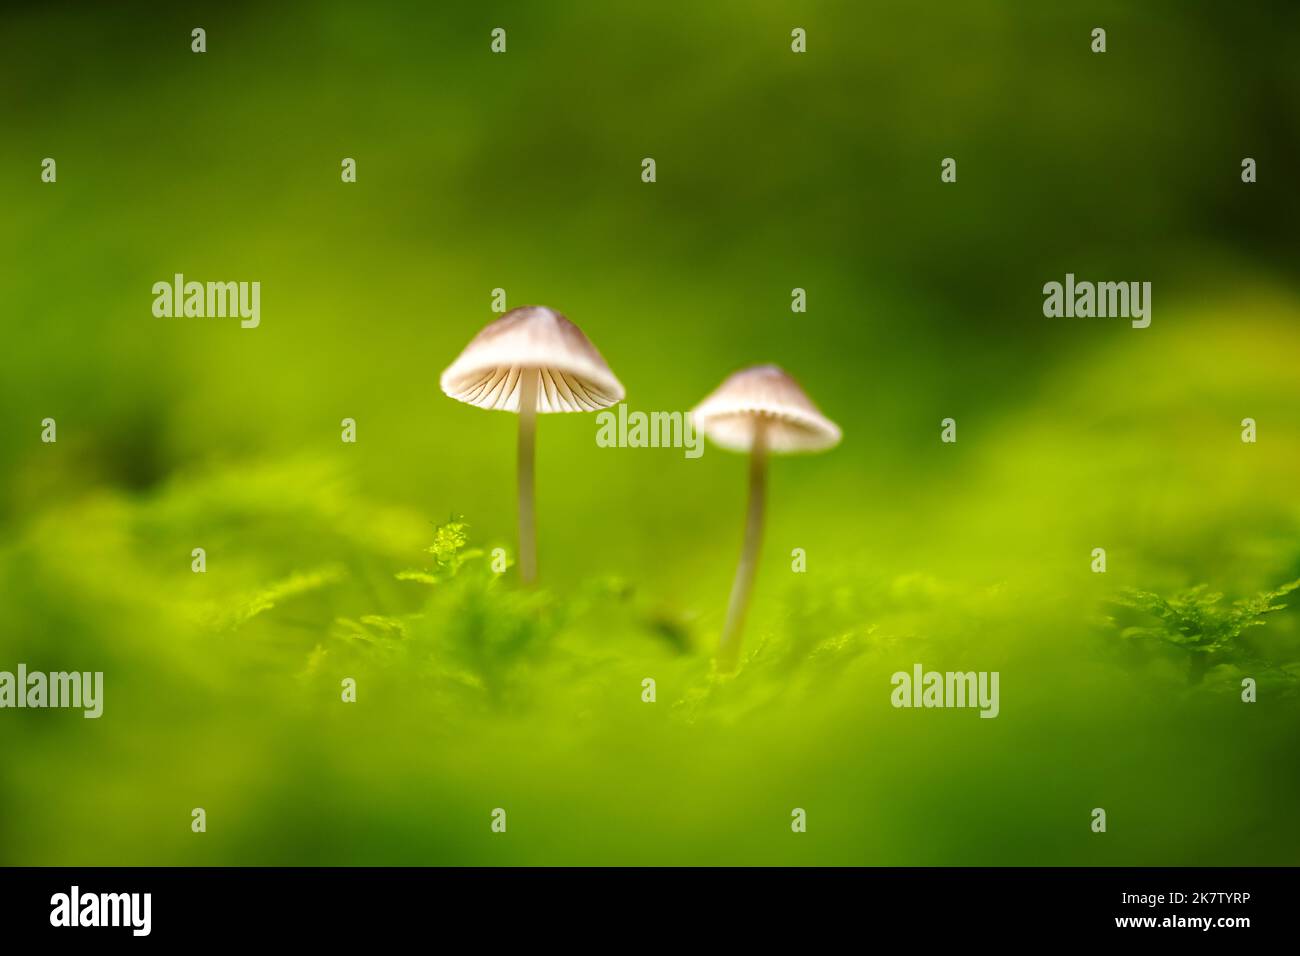 Bellissimo scatto macro di due funghi boschivi in muschio. Macro fotografia naturalistica Foto Stock